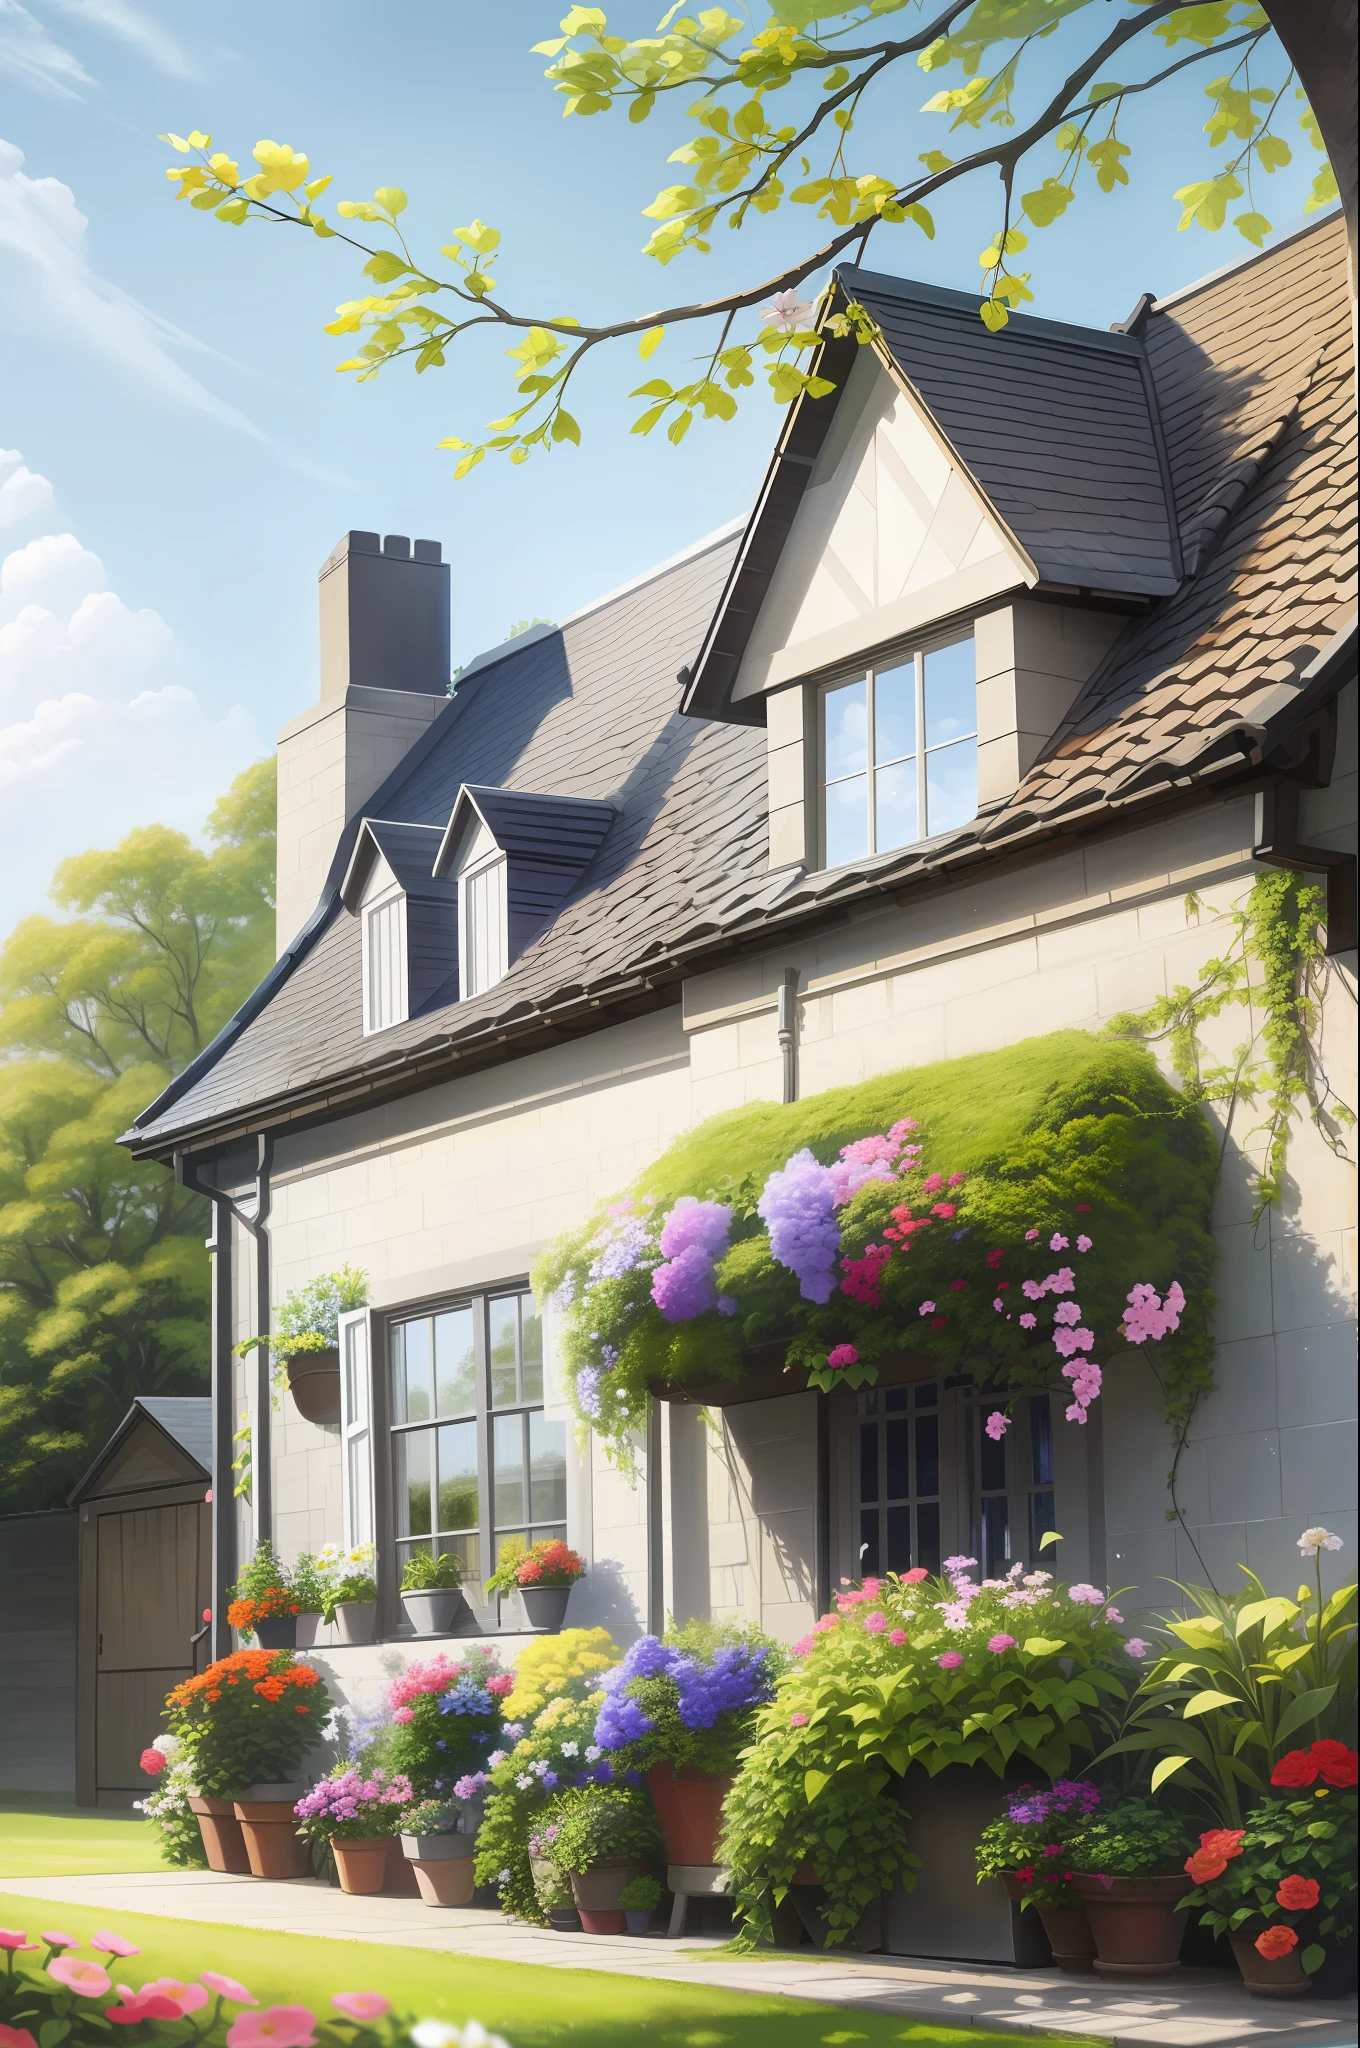 Ultra-detalhado, alta qualidade, Casa britânica, com folhas e flores penduradas no telhado, casa estética, pintura a óleo, obra de arte, Vila, casa branca